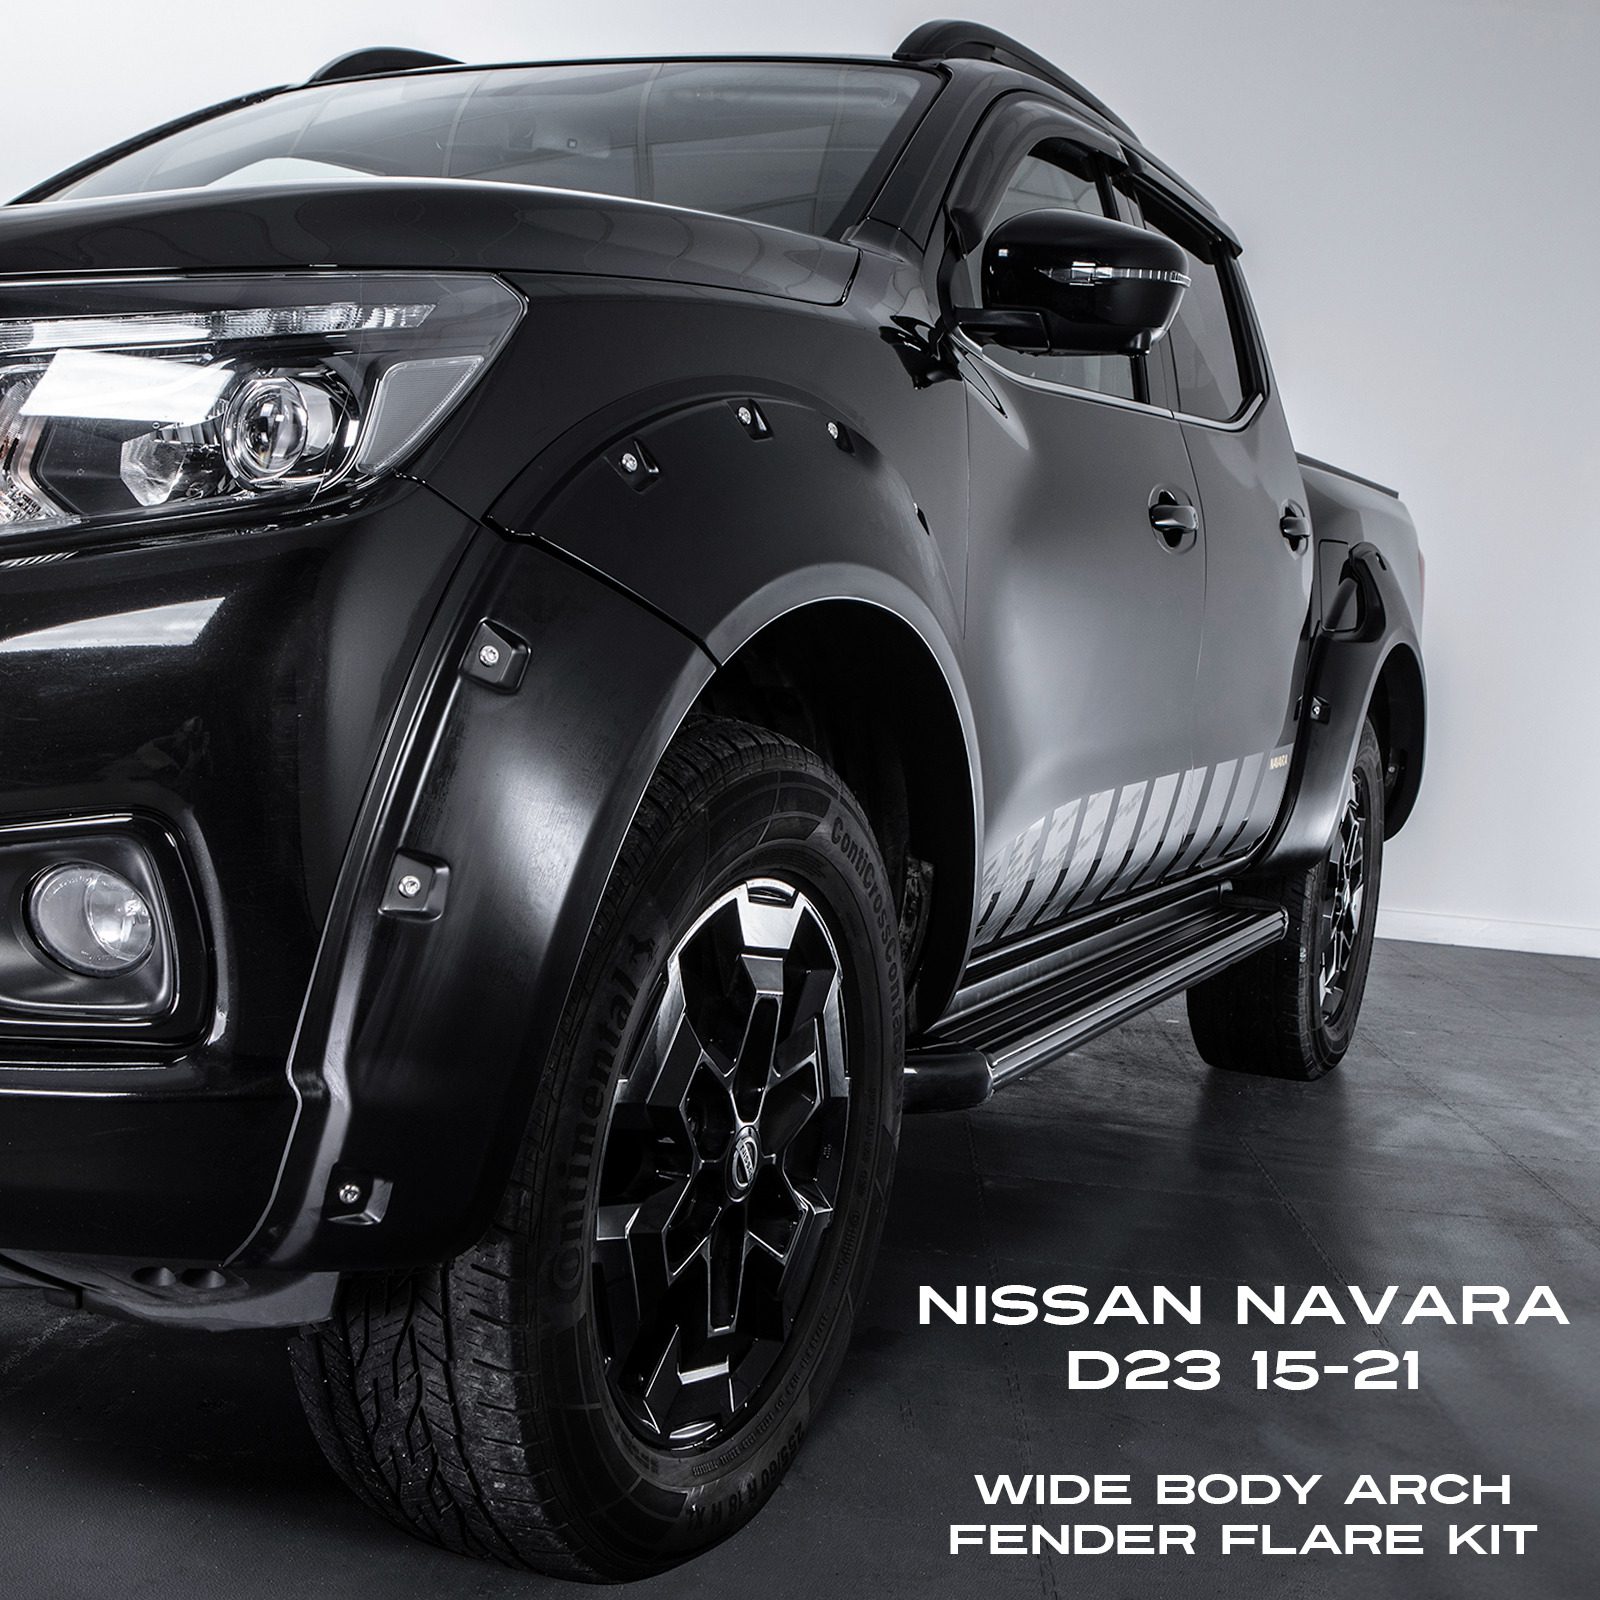 Nissan Navara Wide Body Arch Kit